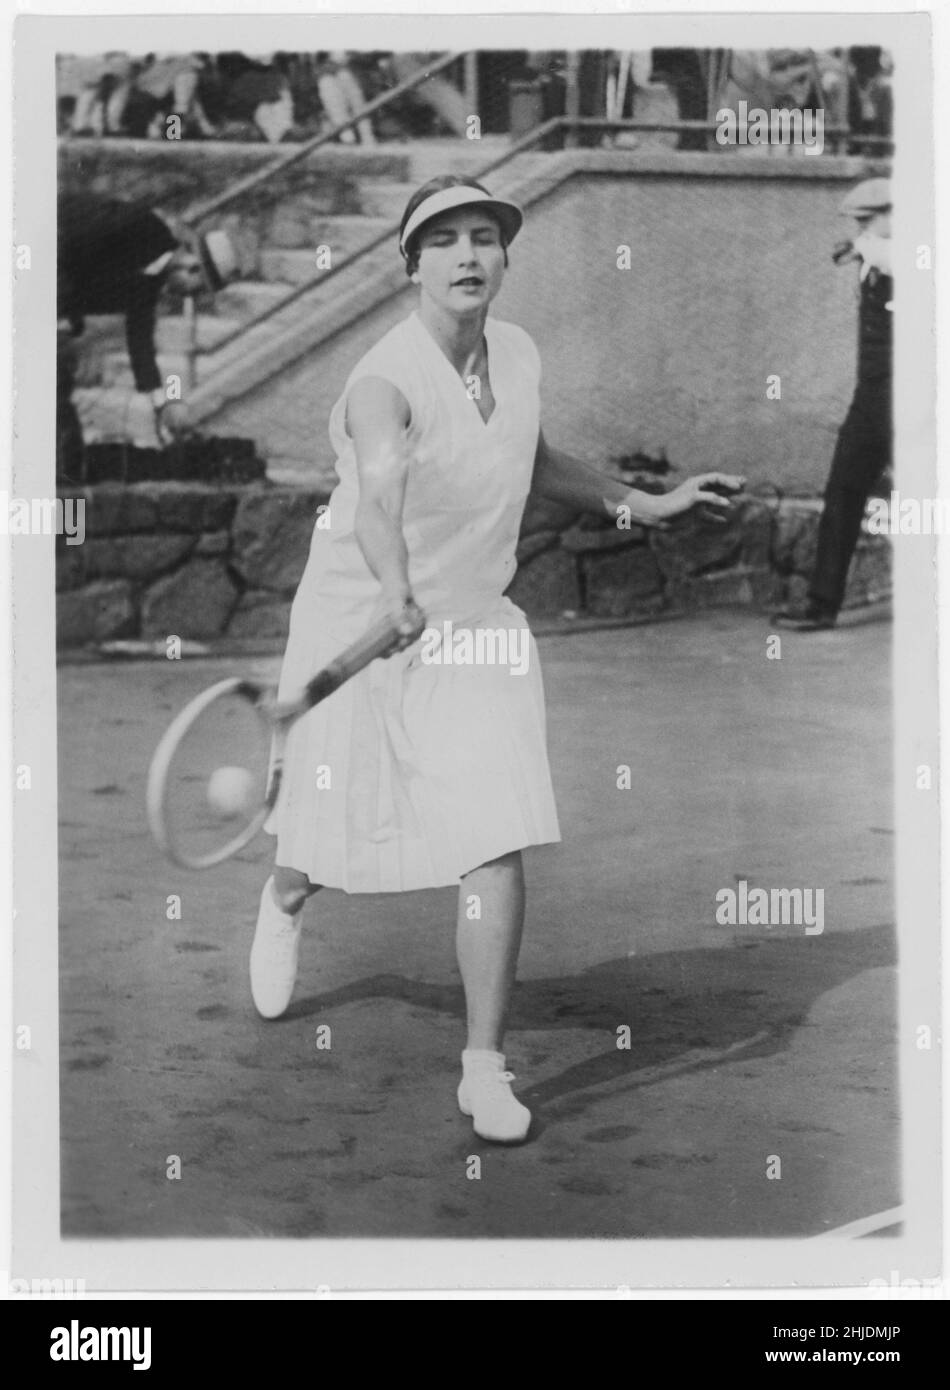 Helen Wills.Joueur américain d'adolescents.Octobre 6 1905 - janvier 1 1998.Également connu par ses noms mariés Helen Wills Moody et Helen Wills Roark.Elle est devenue célèbre pour avoir tenu la position de haut niveau dans le tennis féminin pendant un total de neuf ans : 1927–33, 1935 et 1938.Elle a remporté 31 titres de tournoi Grand Chelem (simples, doubles et doubles mixtes) au cours de sa carrière, dont 19 titres simples.Wills a été la première athlète américaine à devenir une célébrité mondiale, se rendant amis avec des stars de la royauté et du cinéma malgré sa préférence pour rester hors de la limite.Elle a été admirée pour son physique gracieux Banque D'Images